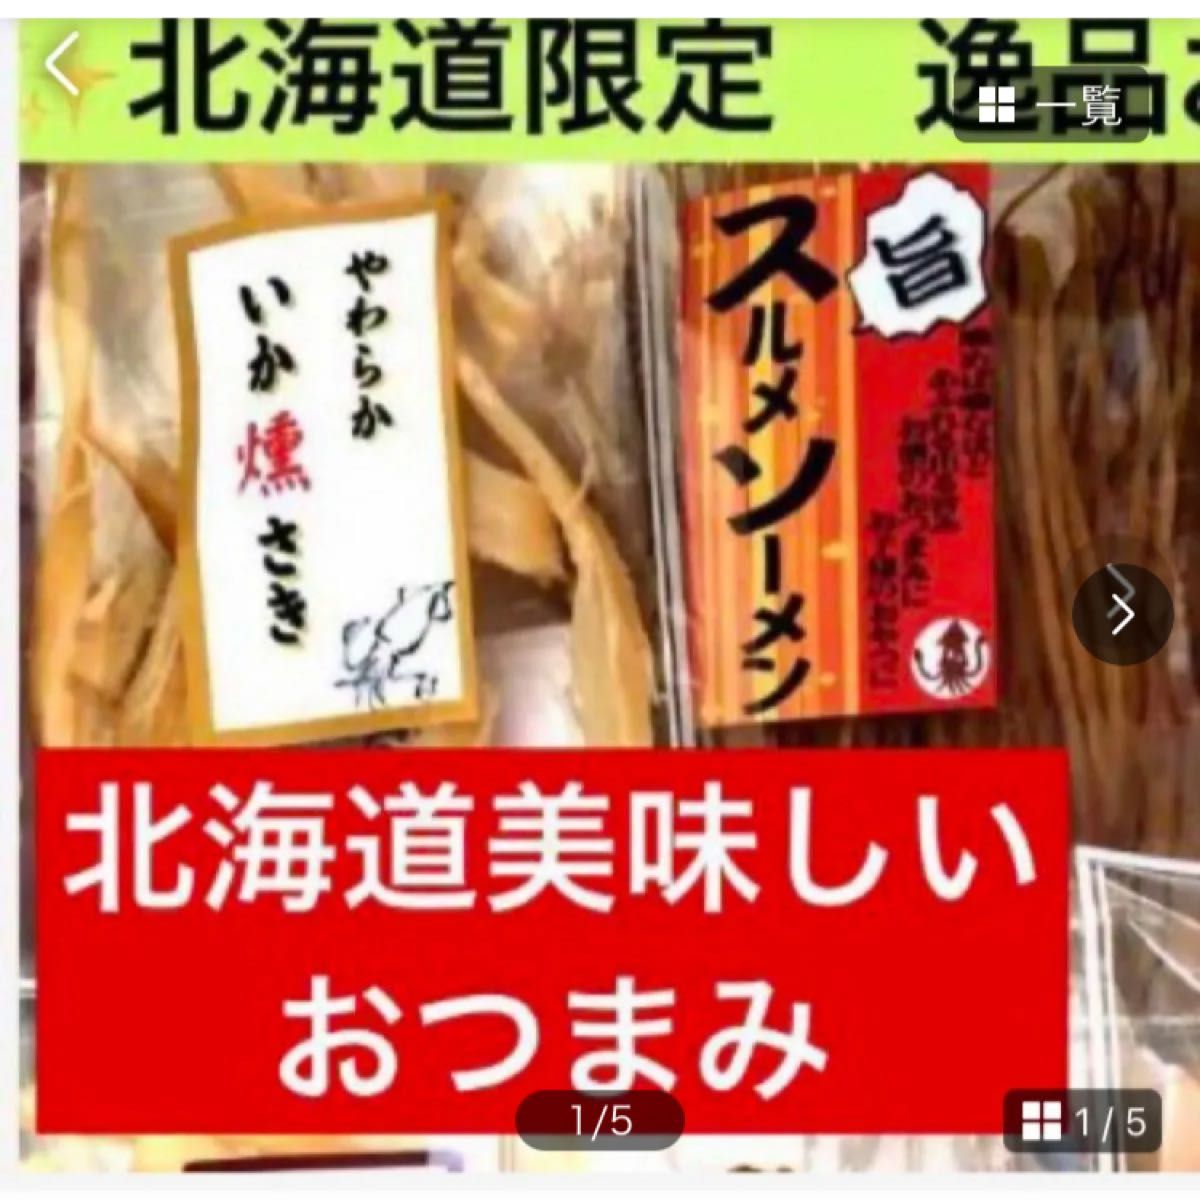 【お試し用】北海道美味しいおつまみSALE【①いか燻さき②スルメソーメン】